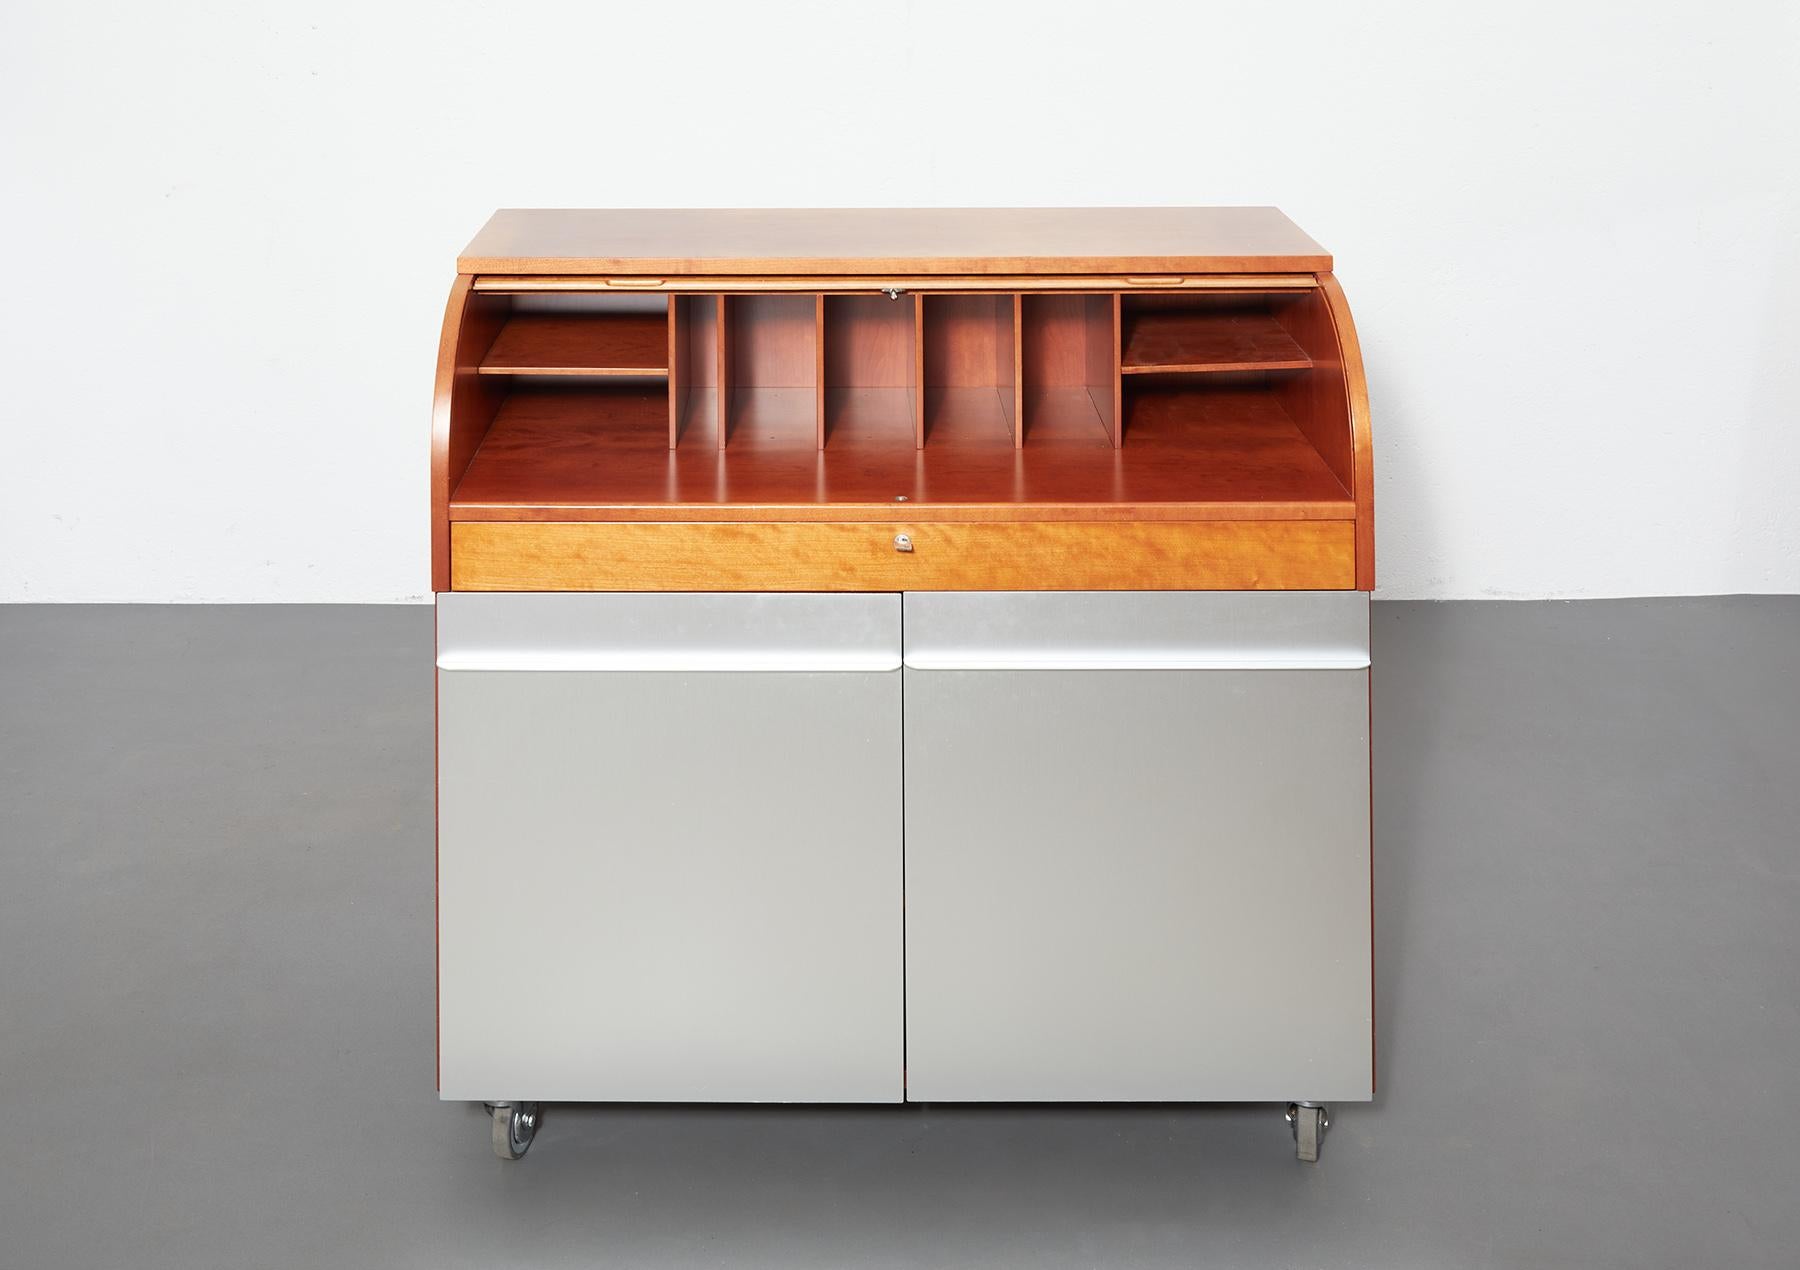 Schreibtisch aus Kirschholz und Aluminium von Vico Magistretti, De Padova, Italien.
Dieser Schreibtisch stammt aus der Serie 